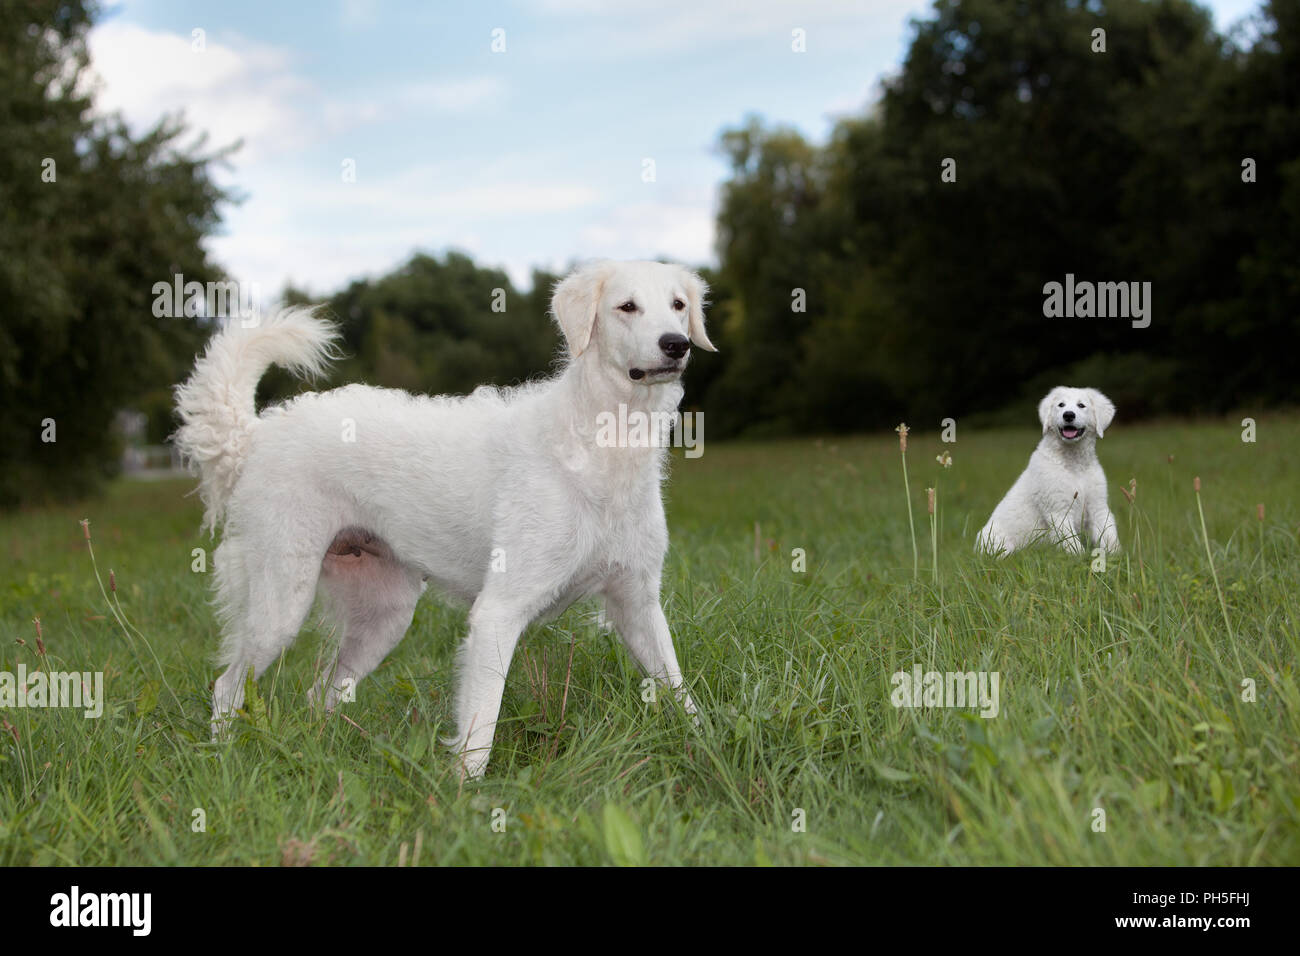 Kuvacz, ungarischer Hirtenhunde, ungherese vcanis lupus familiy pet Muttertier Herdenschutzhund Welpen im Hintergrund Foto Stock